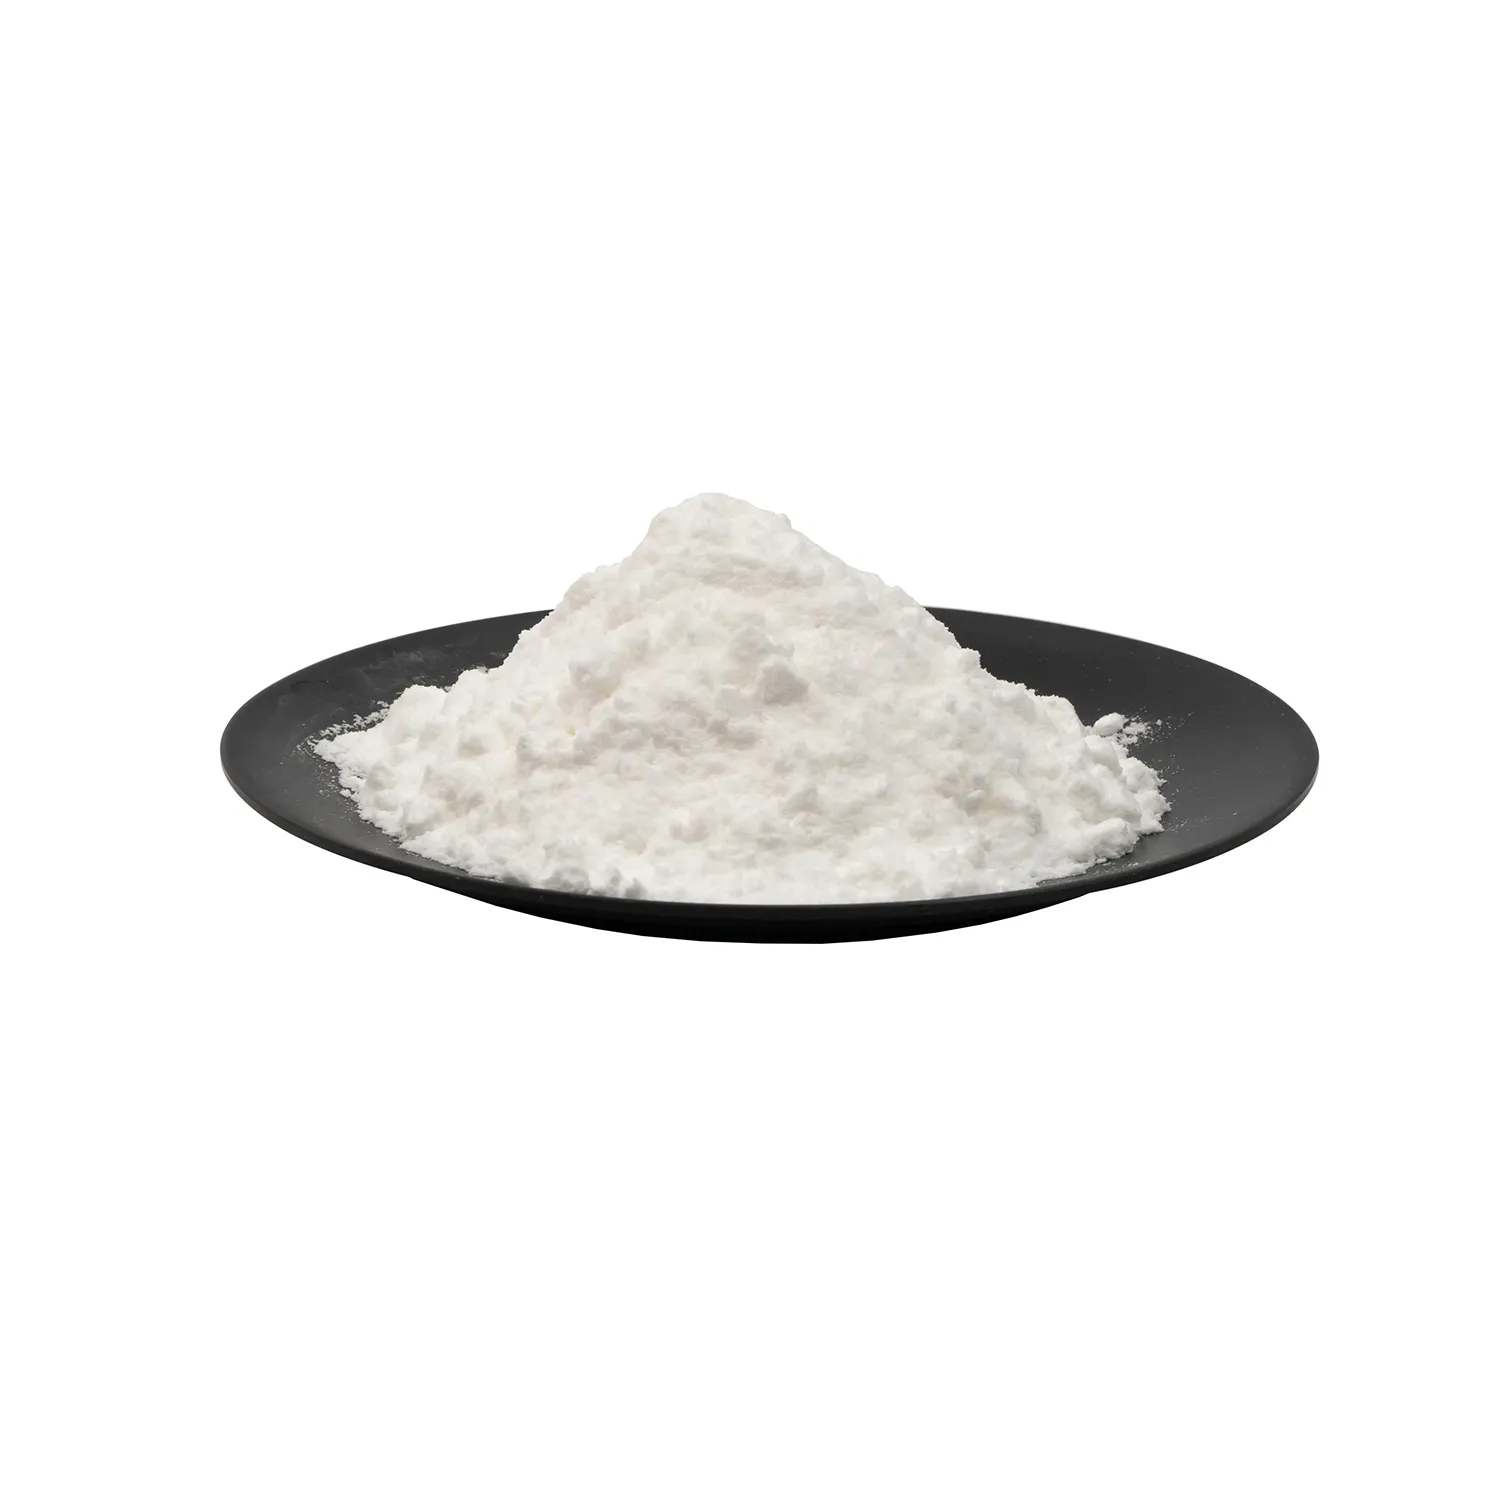 Extrait d'écorce de saule blanc CAS 138-52-3 D-(-)-salicine